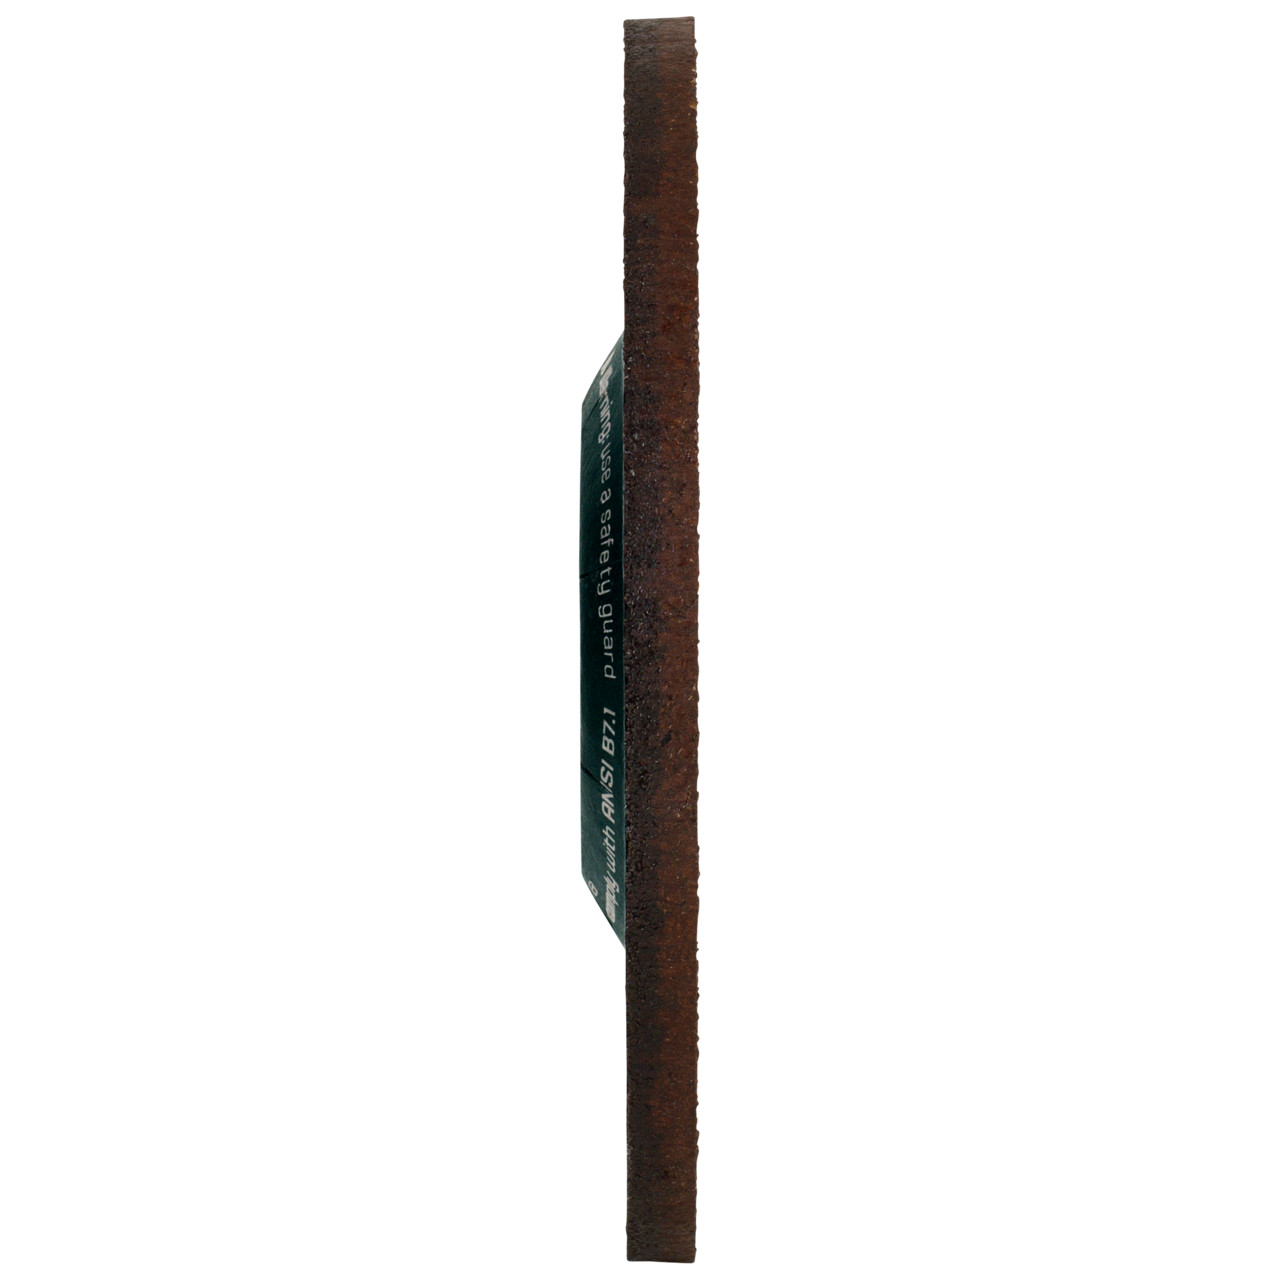 Tyrolit Voorslijpschijf DxUxH 150x7x22,23 CERABOND X voor staal en roestvast staal